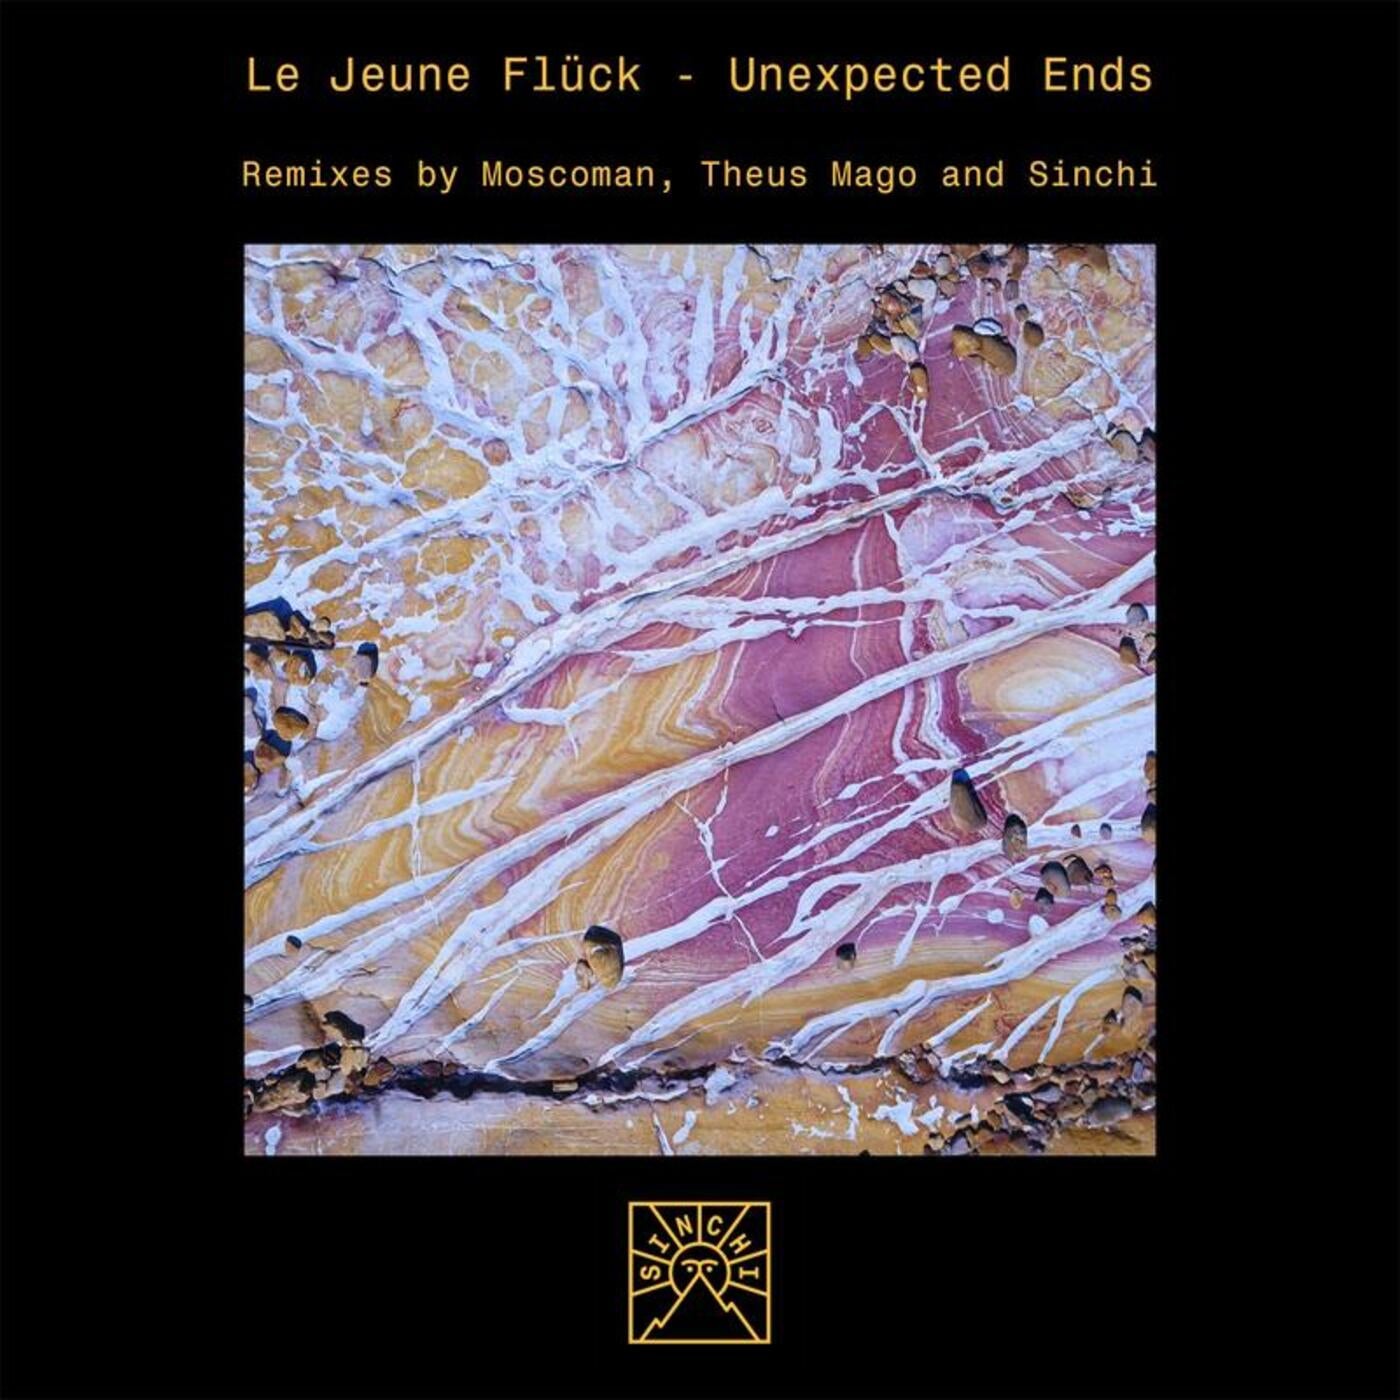 La Jeune Fluck_Unexpected Ends (Theus Mago Remix)_Sinchi